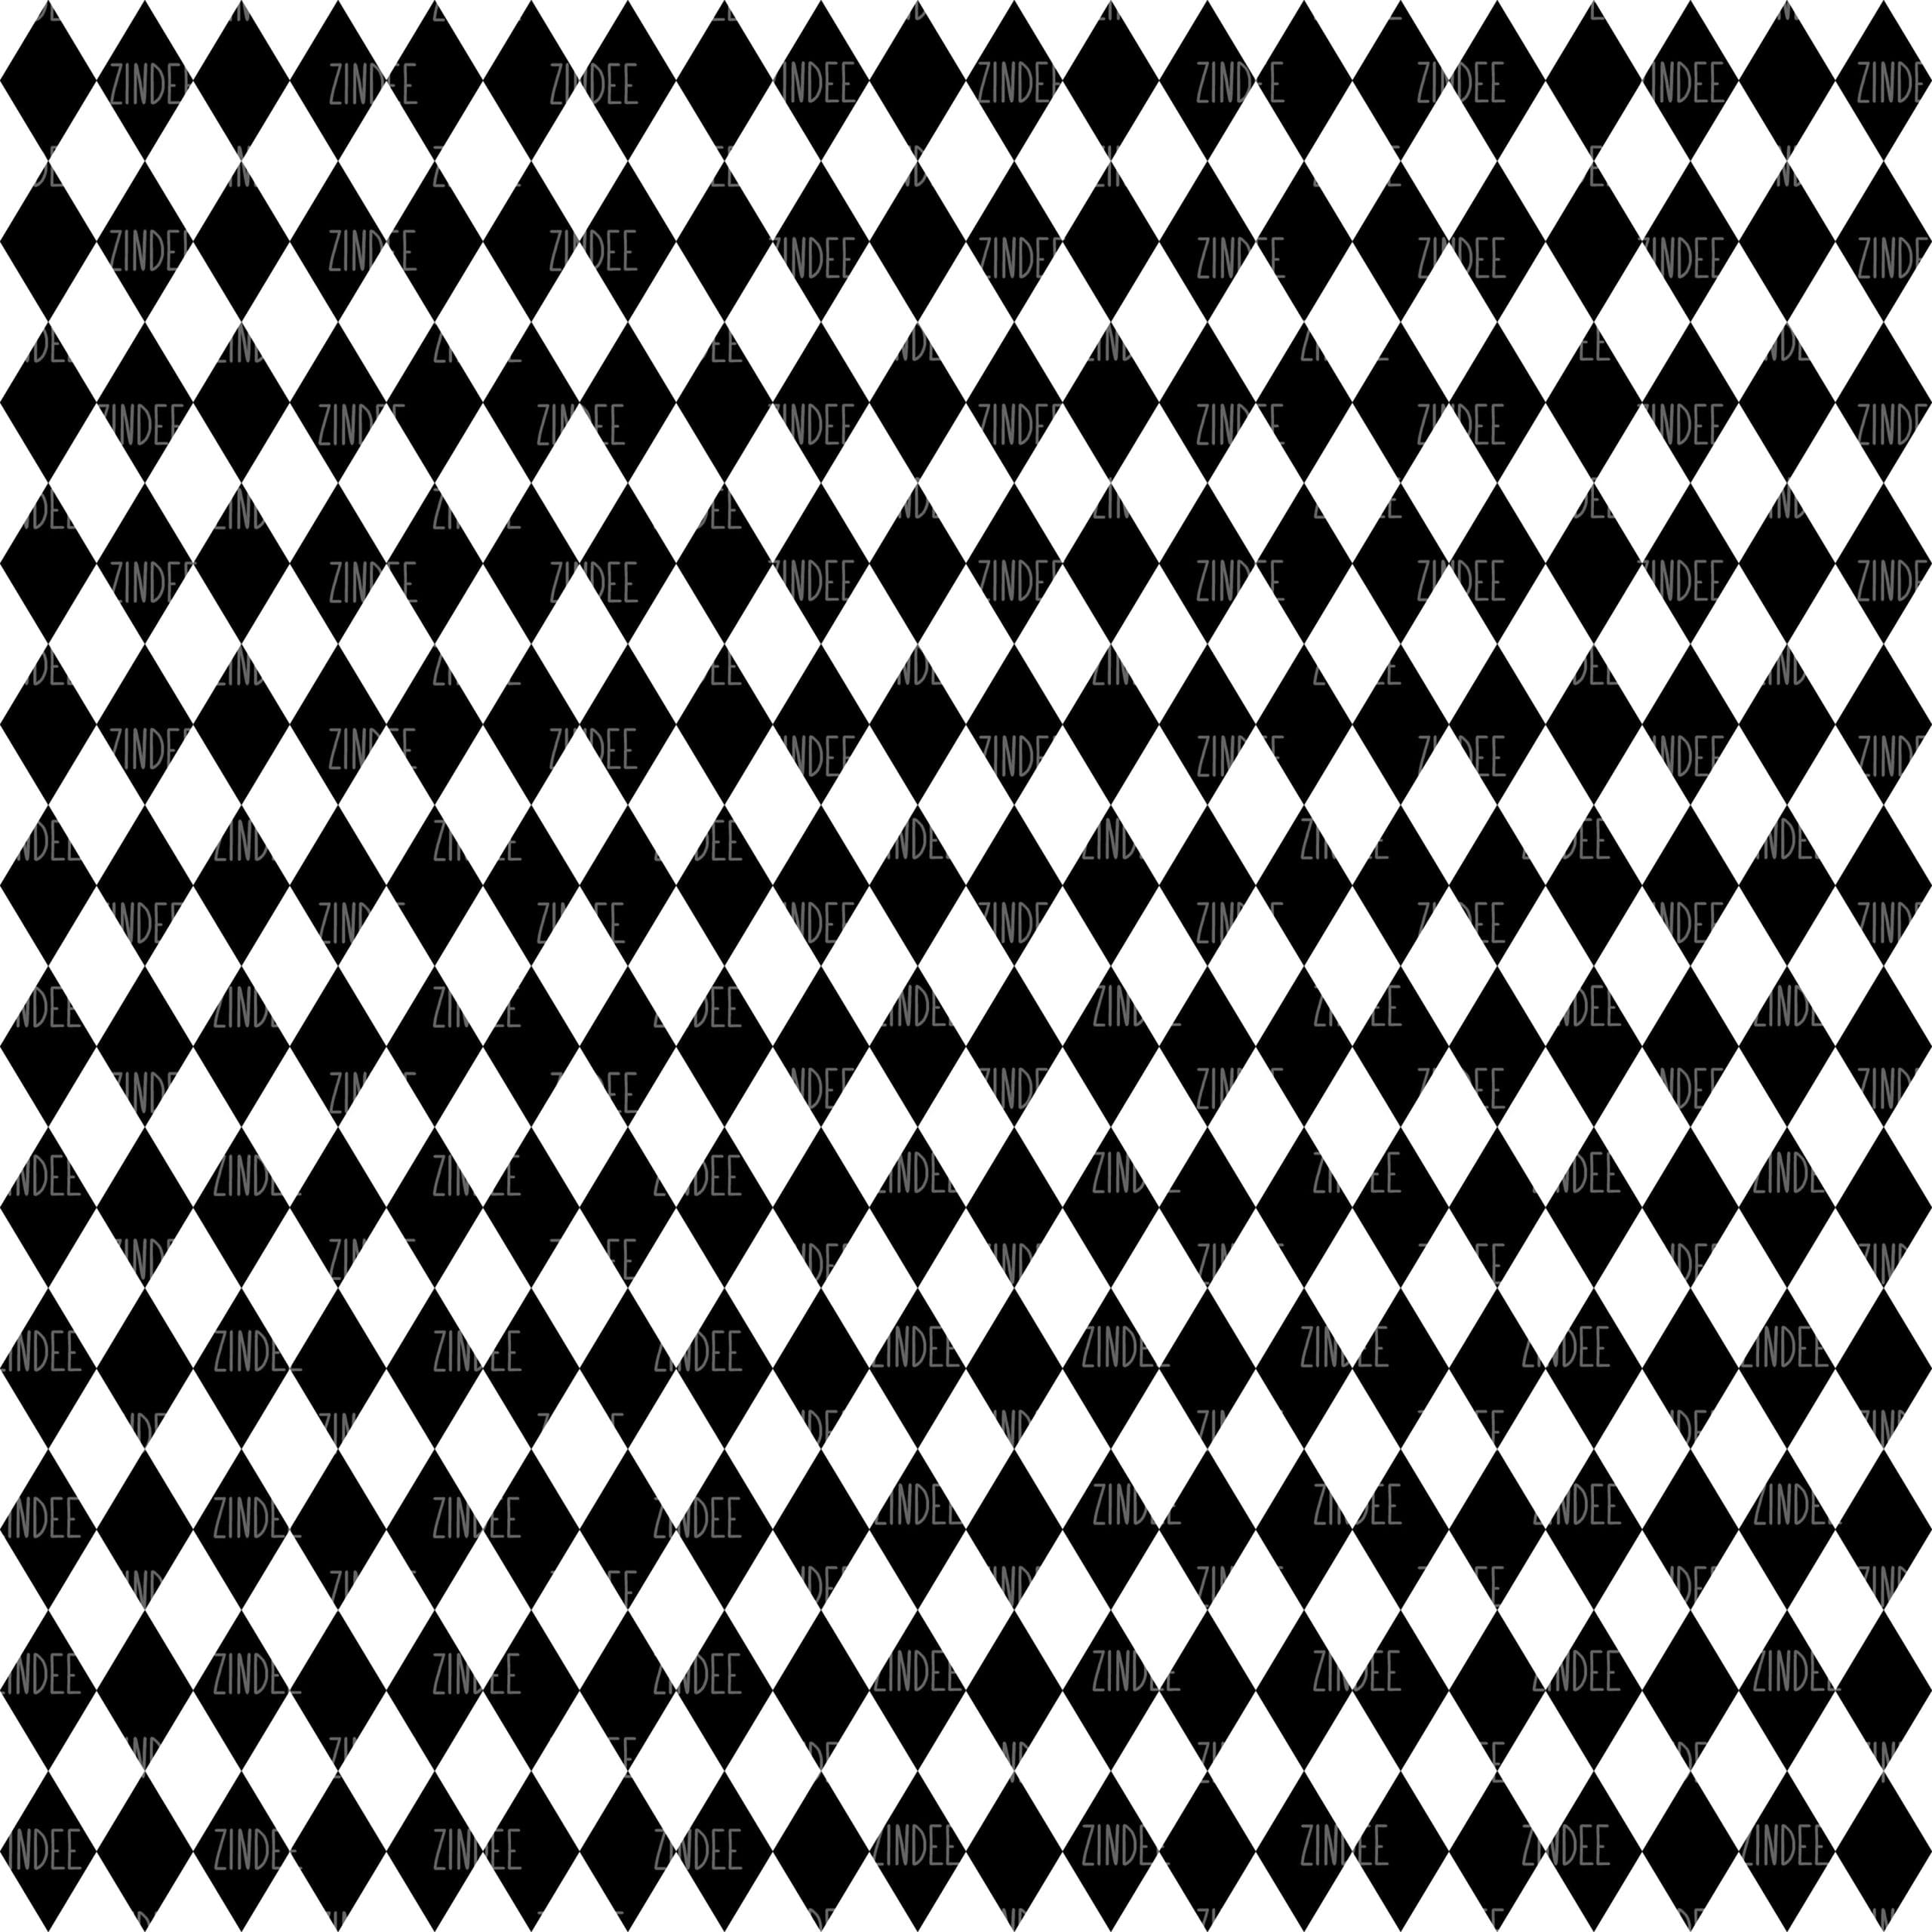 Chevron Digital Paper Black and White Digital Paper Polka Dots